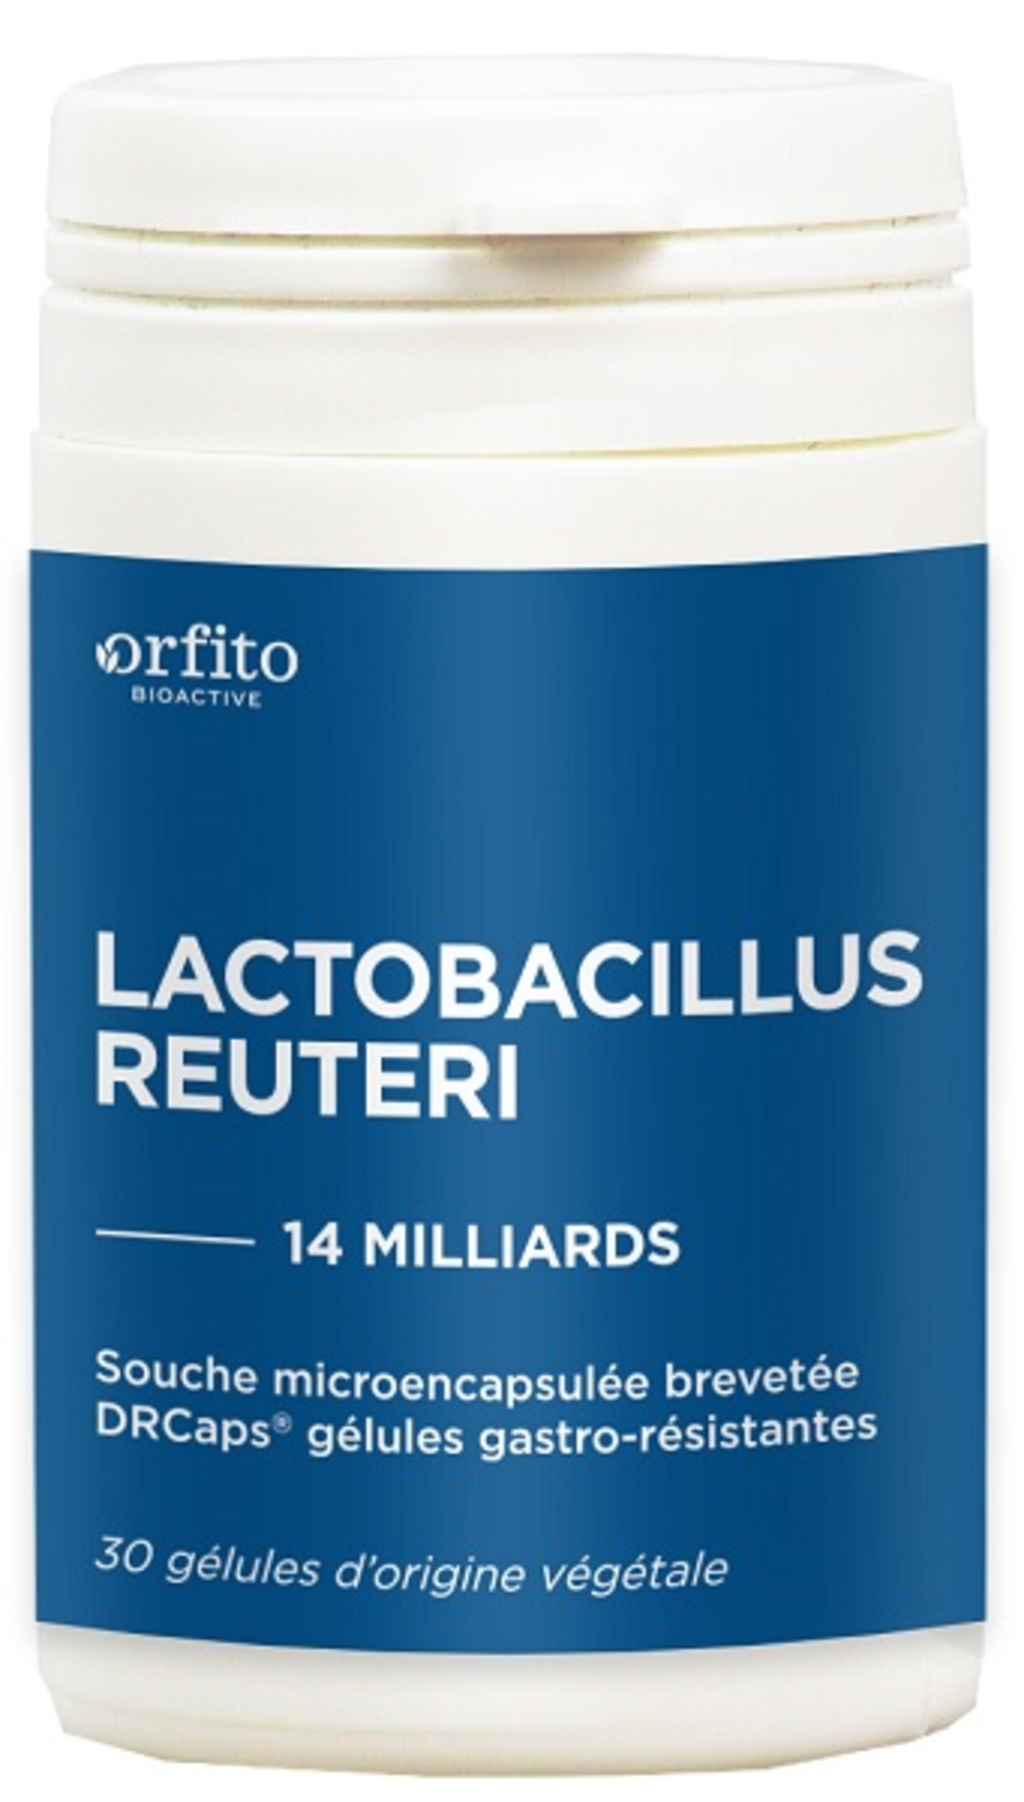 Lactobacillus Reuteri 14 milliards